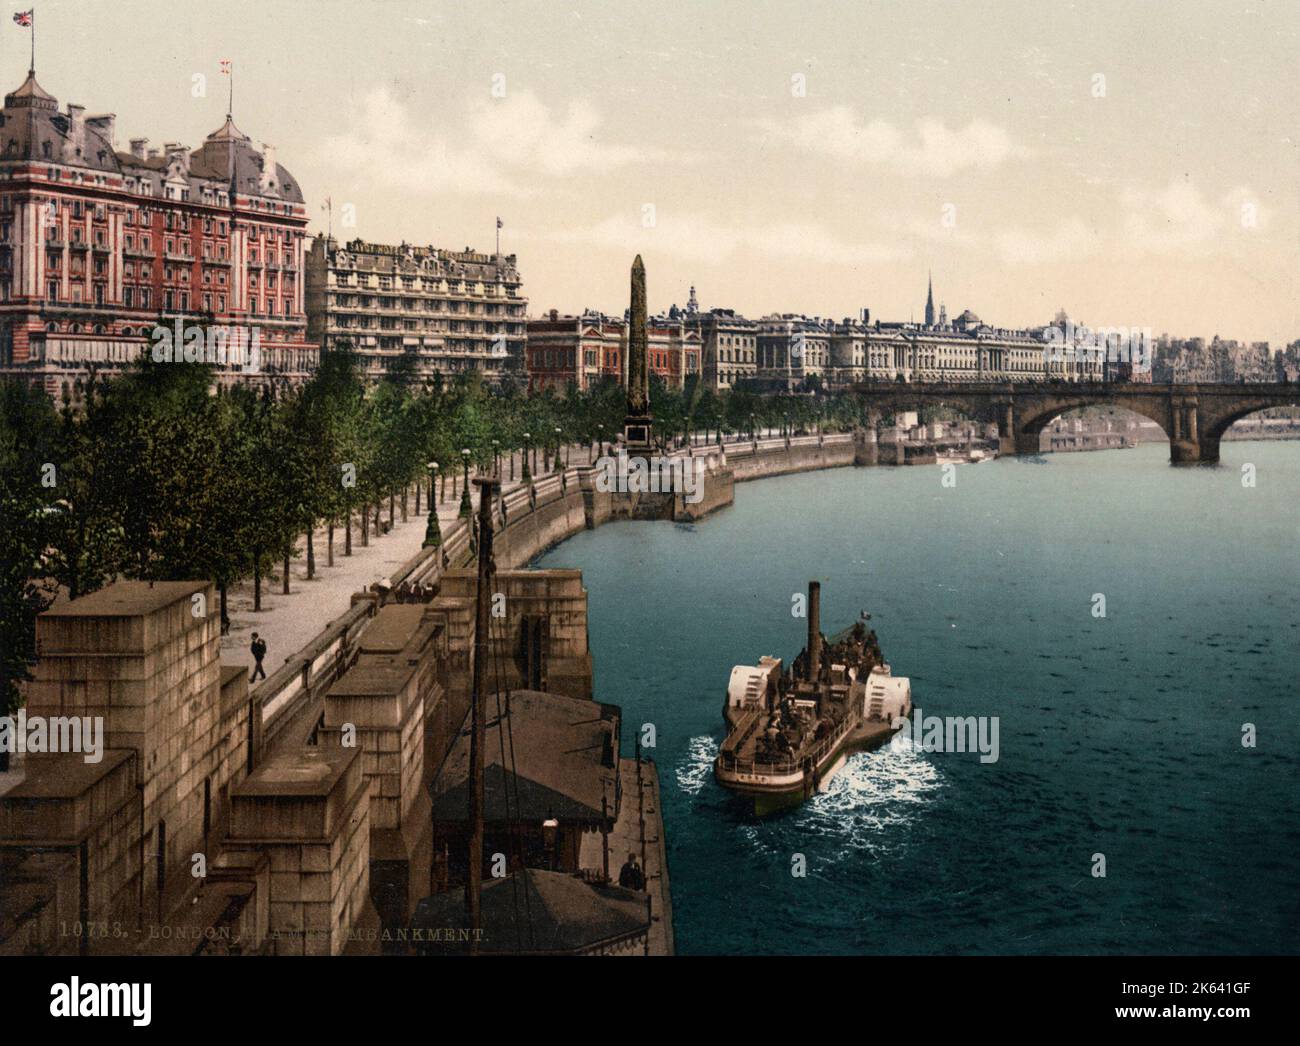 Rivière Thames et Embankment, bateau à aubes, Londres. Photographie vintage du 19th siècle. Banque D'Images